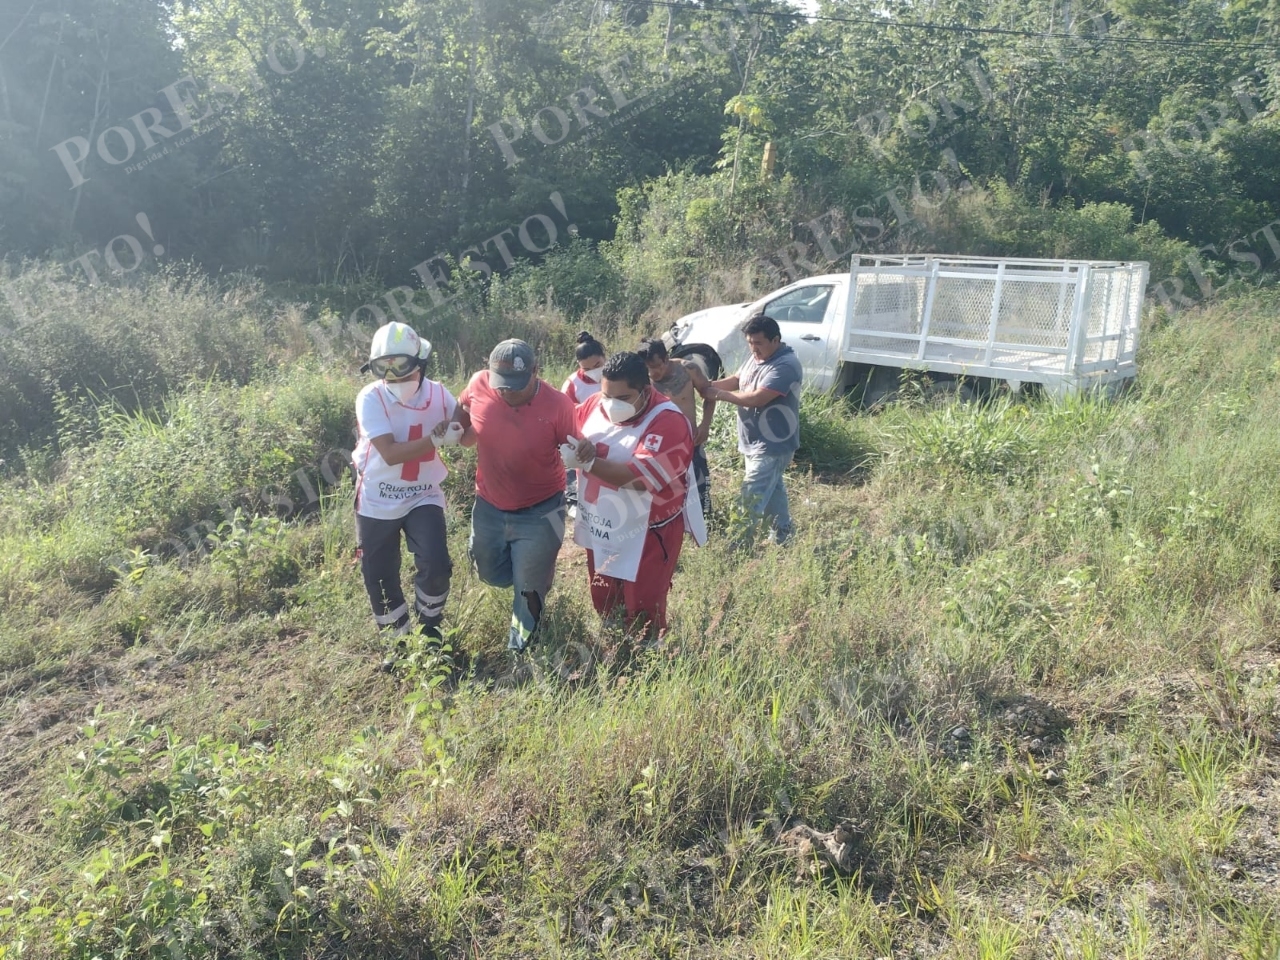 Paramédicos de la Cruz Roja ayudaron a los trabajadores lesionados tras el accidente en Carrillo Puerto, para luego valorarlos